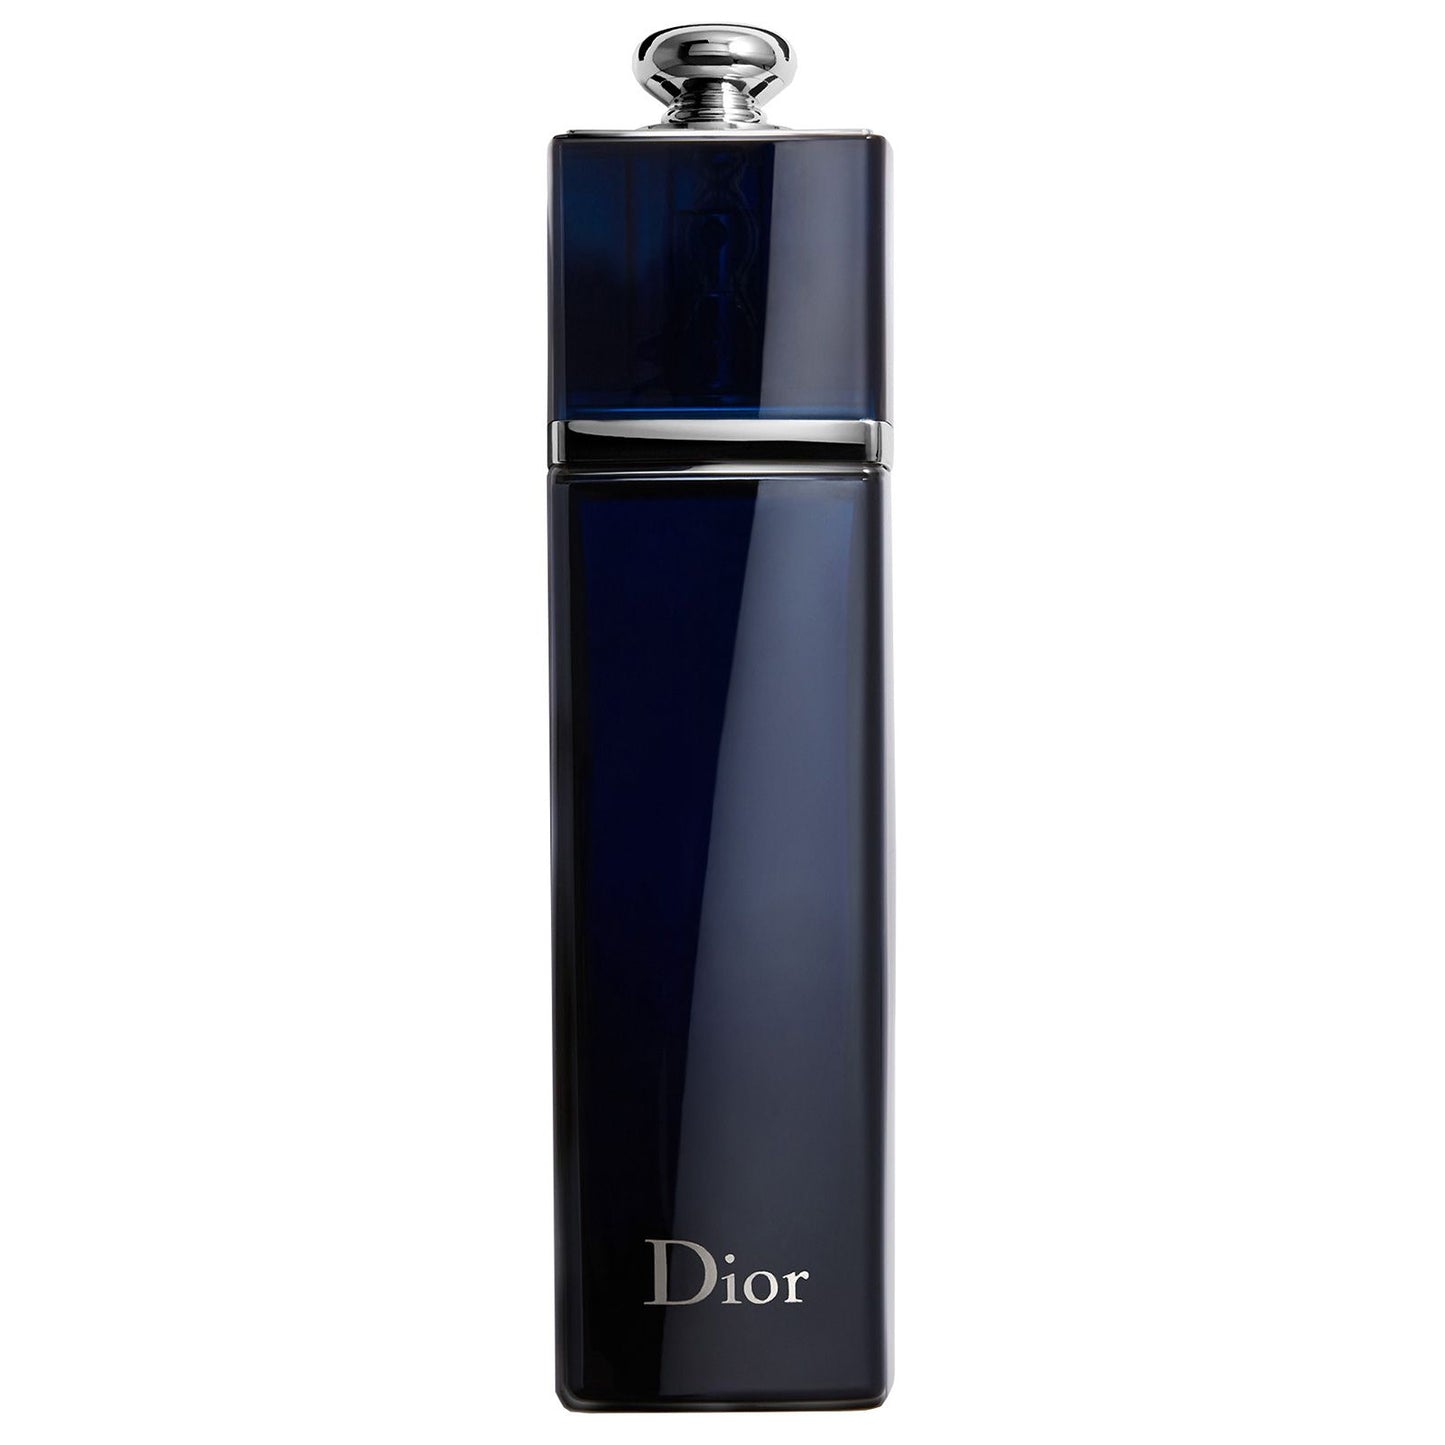 Dior - Addict EDP 100ml